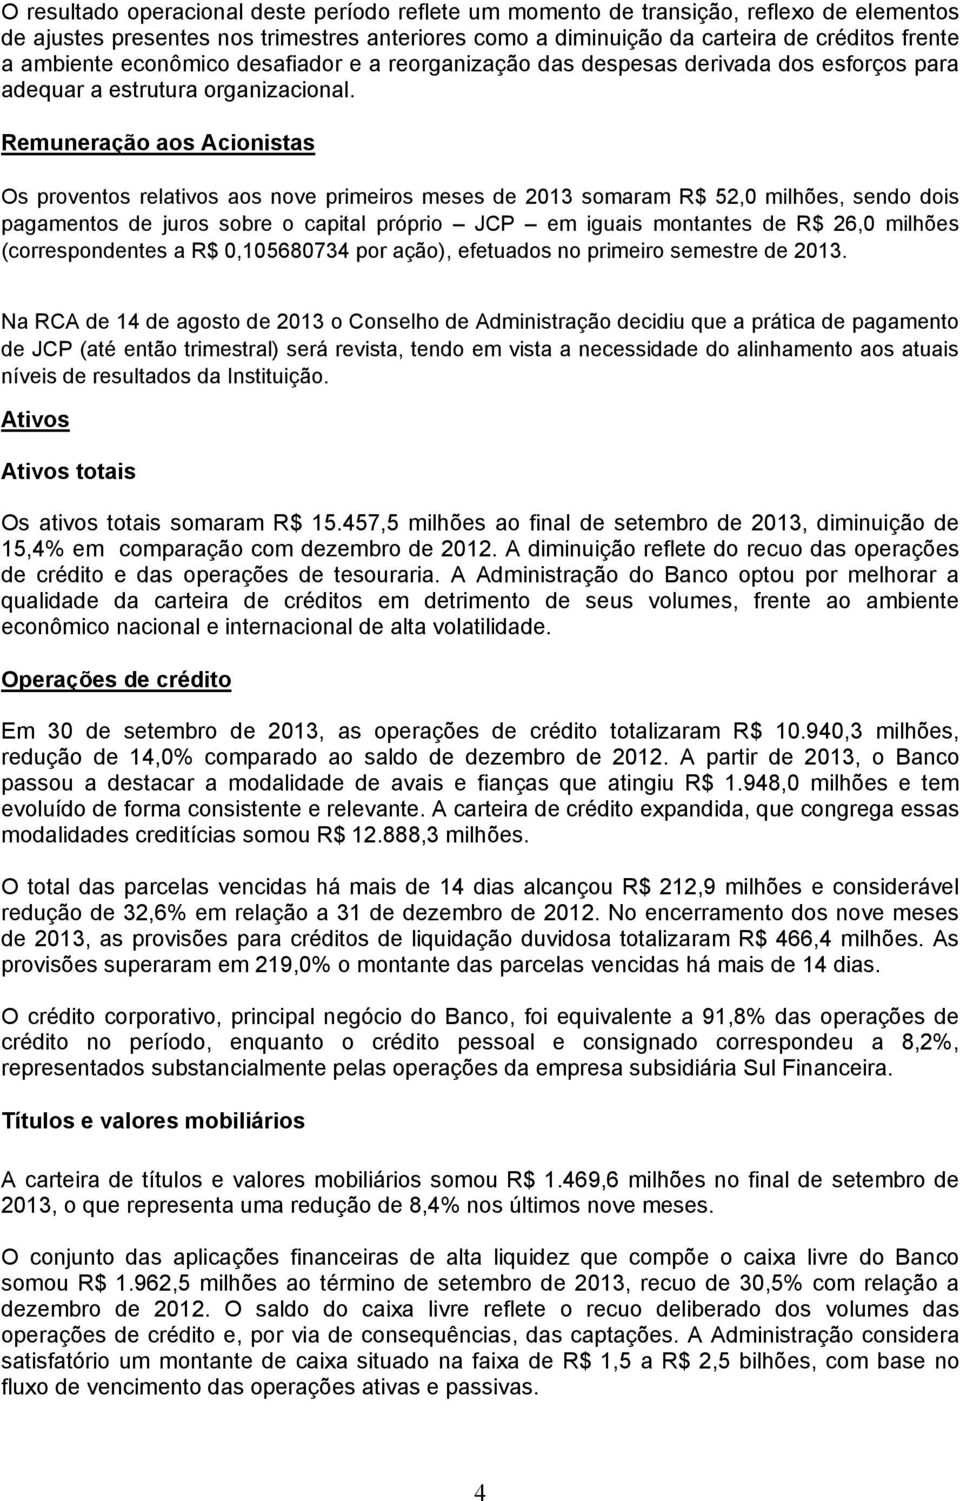 Remuneração aos Acionistas Os proventos relativos aos nove primeiros meses de 2013 somaram R$ 52,0 milhões, sendo dois pagamentos de juros sobre o capital próprio JCP em iguais montantes de R$ 26,0